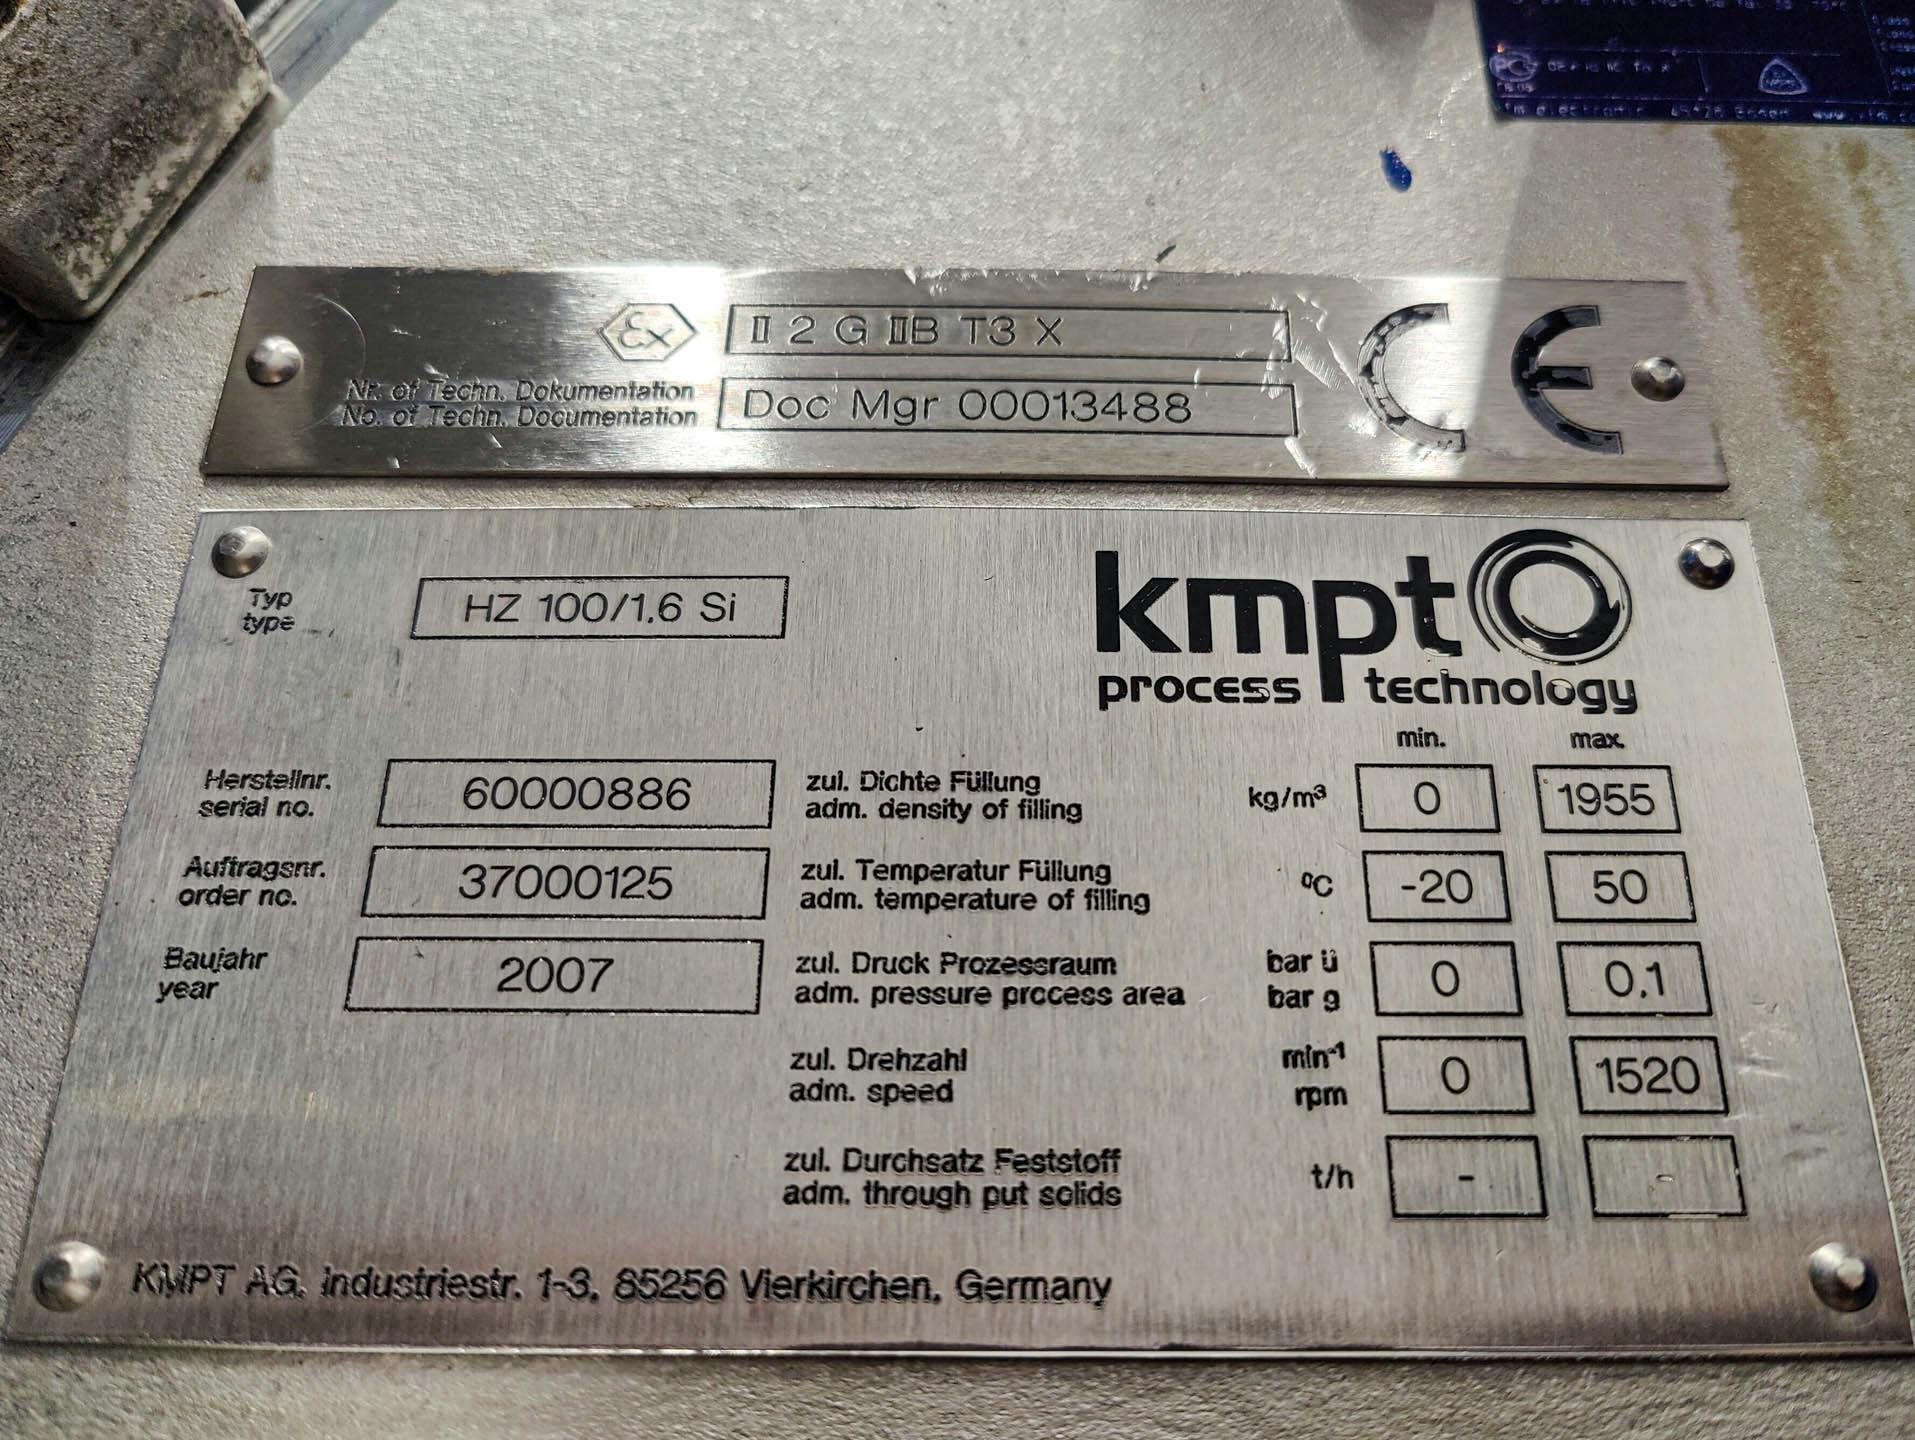 Andritz KMPT HZ-100/1.6 Si "syphon type centrifuge" - Centrífuga de descascar - image 9